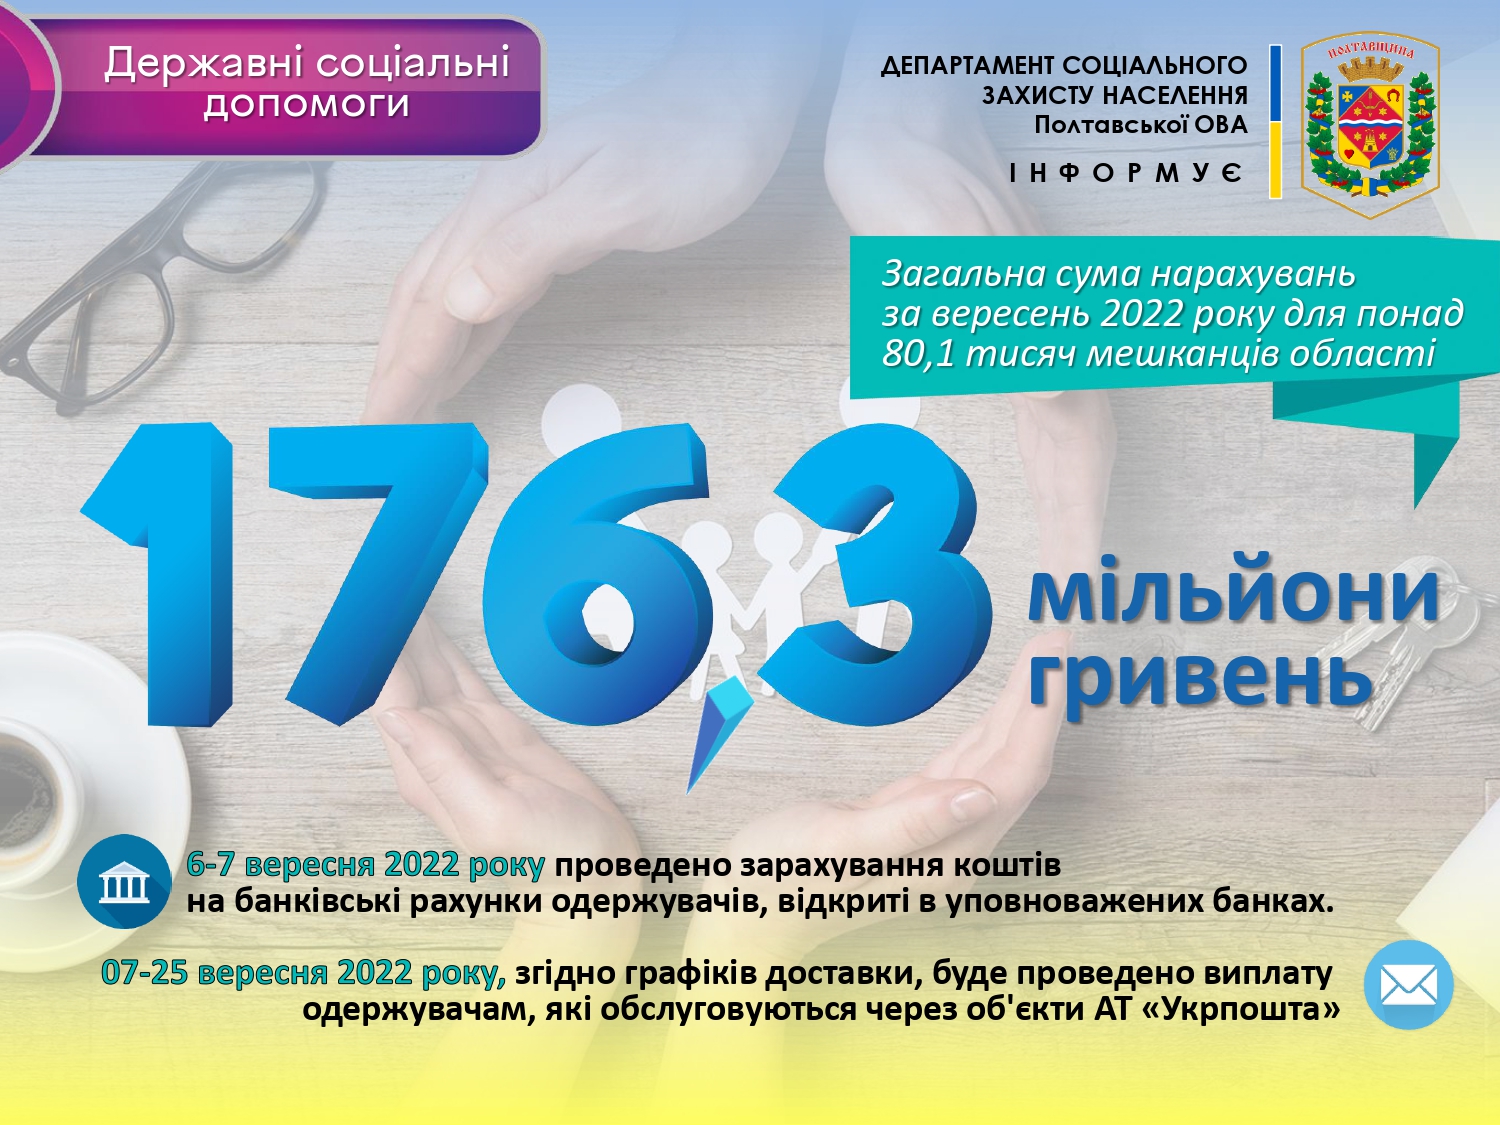 Департамент соцзахисту населення інформує: Виплата державних соціальних допомог у вересні 2022 року